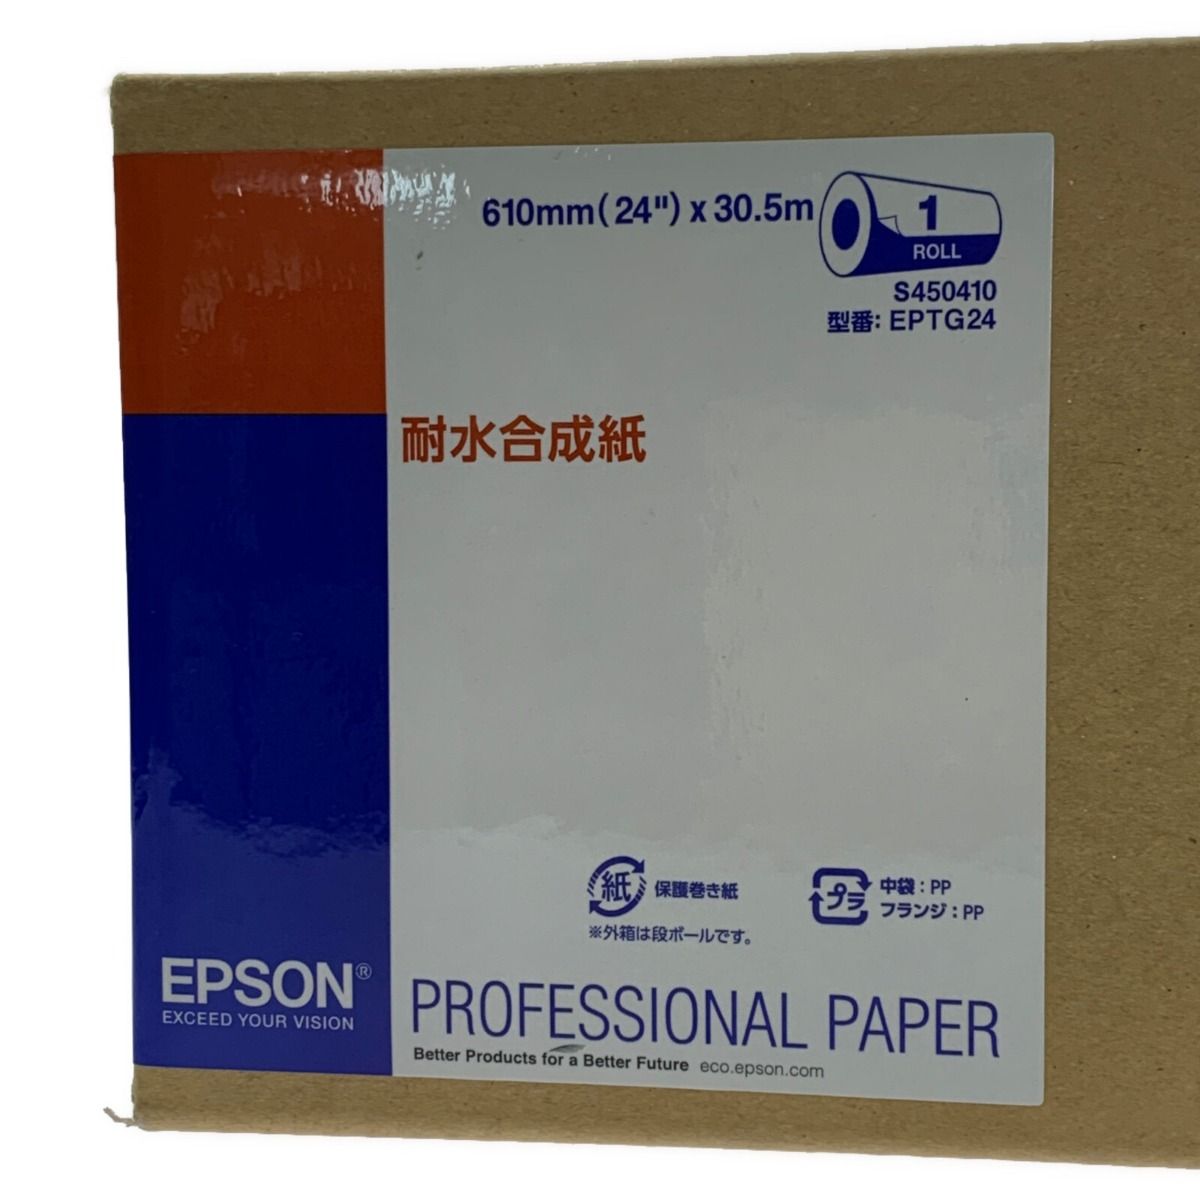 エプソン EPTG24 耐水合成紙 610mm×30.5m - 1